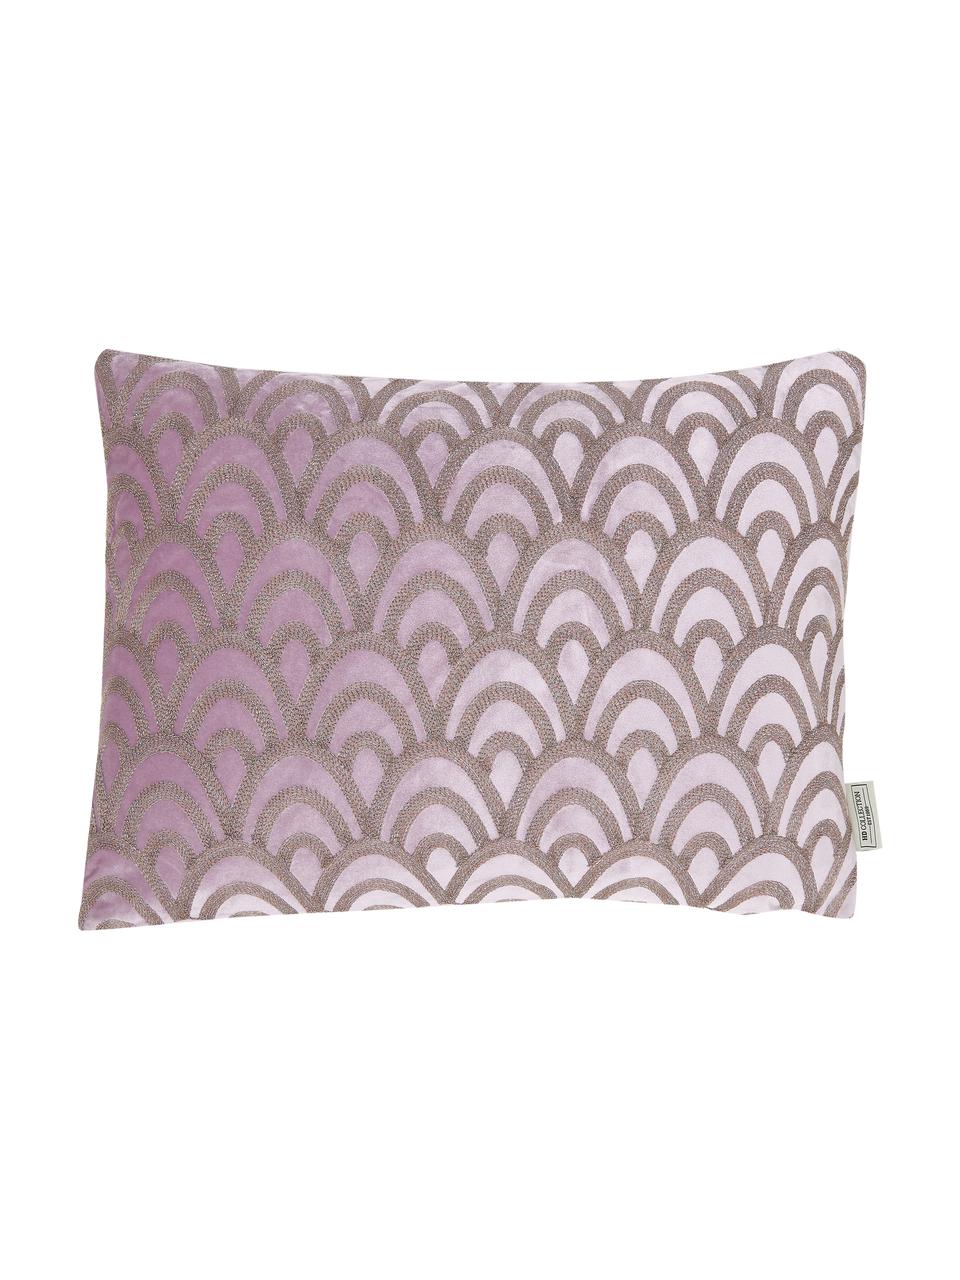 Fluwelen kussen Trole met glanzende borduurwerk, met vulling, 100% fluweel (polyester), Roze, zilverkleurig, 40 x 60 cm